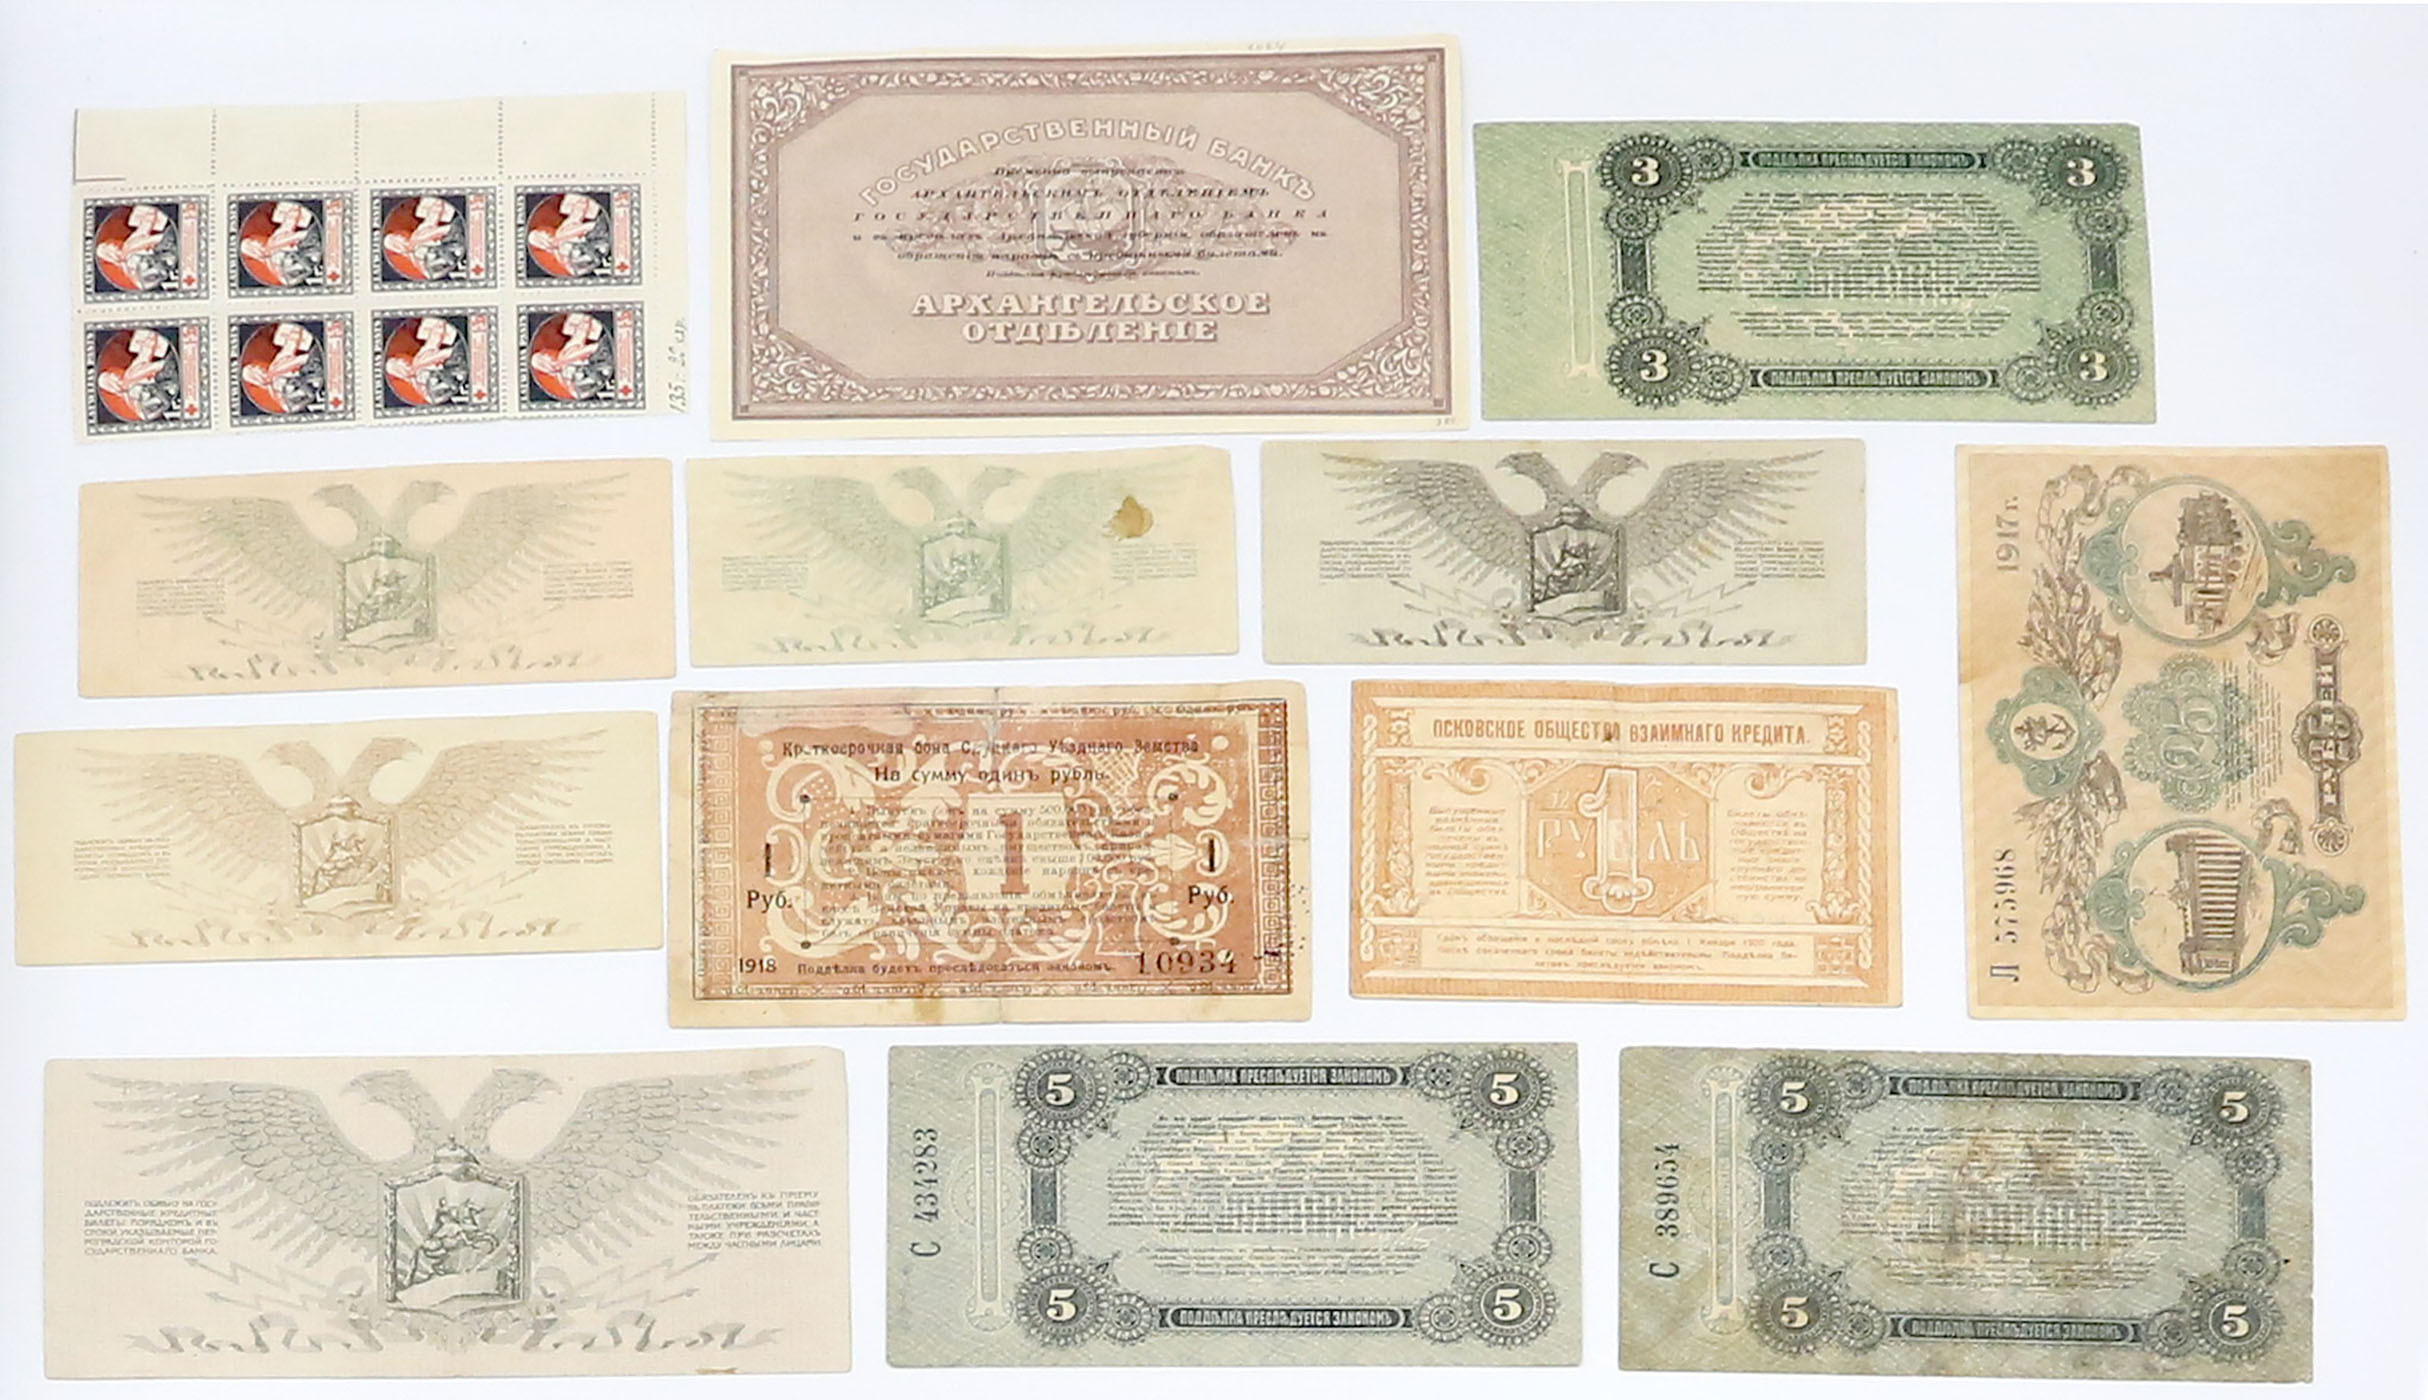 Rosja Północno-Zachodnia, Ukraina - Odessa, zestaw 13 banknotów